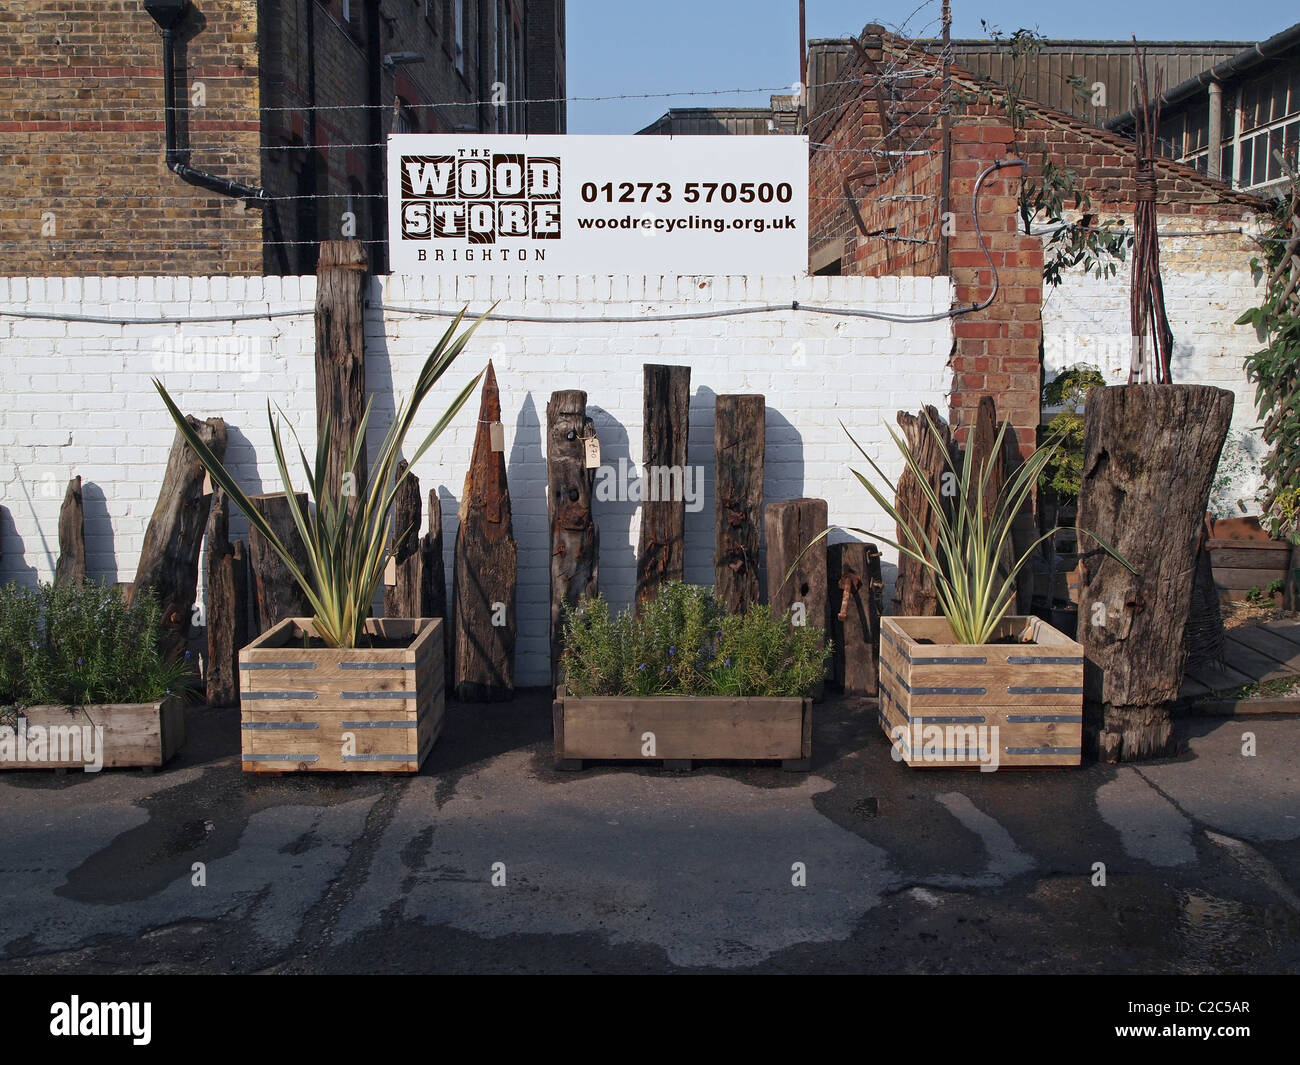 Garten Pflanzgefäße hergestellt aus recycelten Holz und skulpturalen Stücke "Treibholz" an der Brighton Woodstore, Circus Street, Brighton Stockfoto